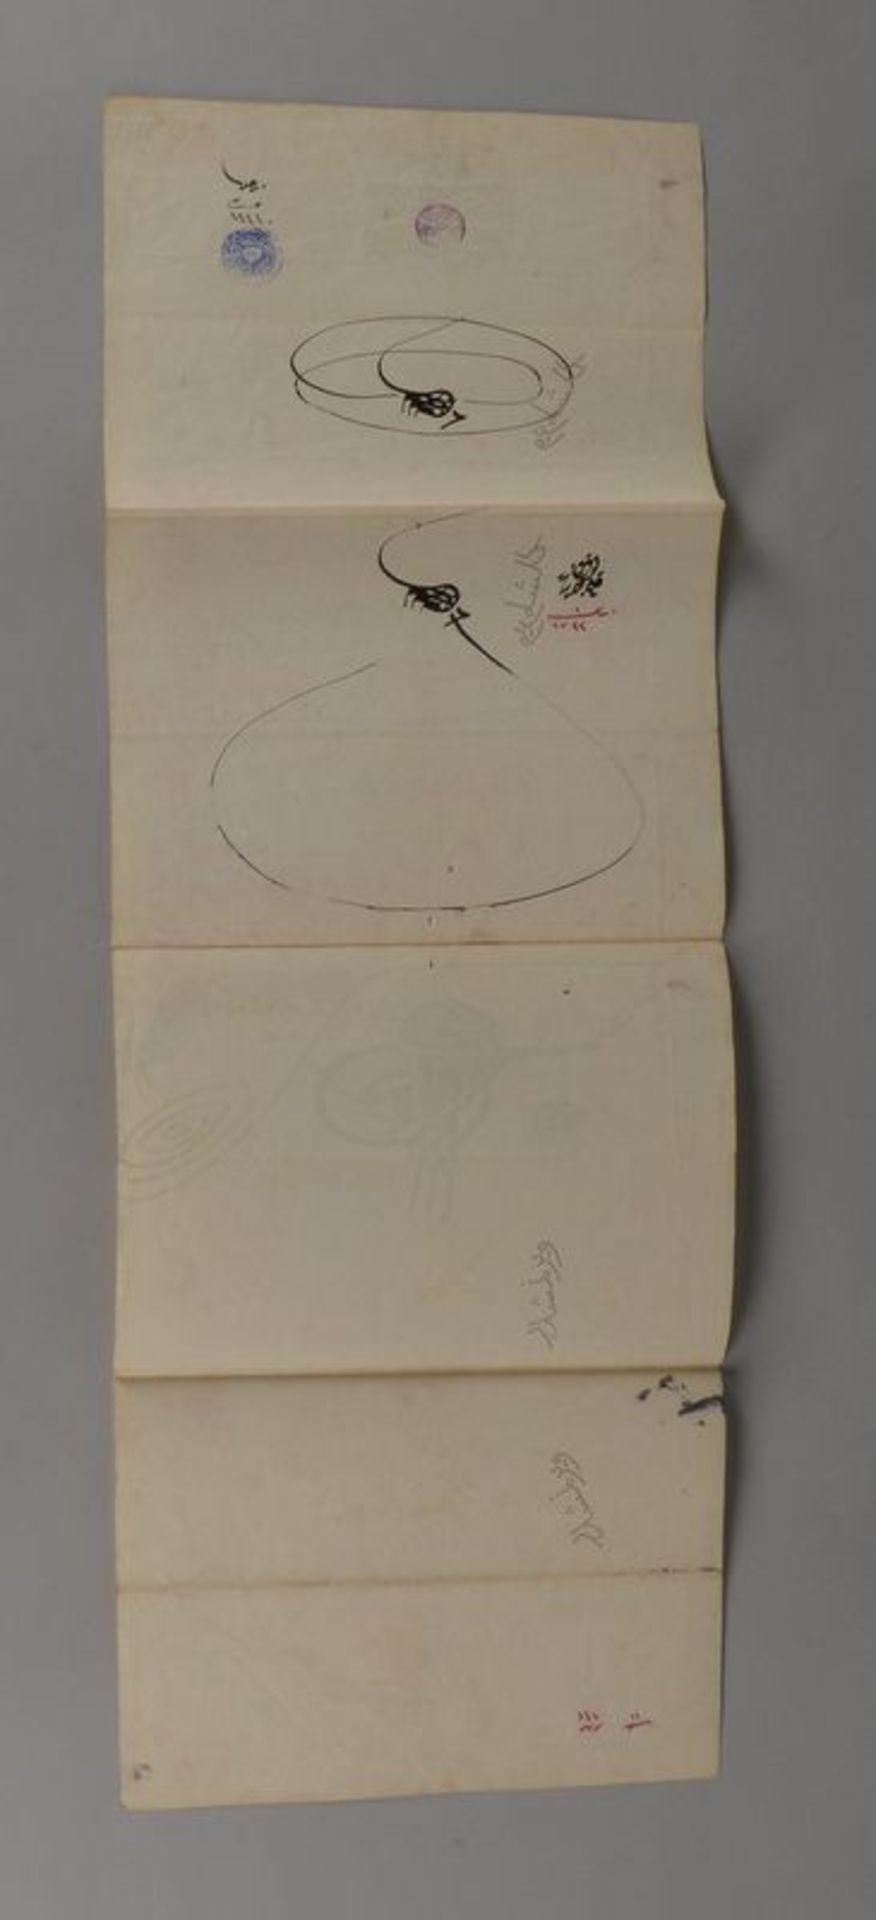 Amtliches Dokument (Persien - wohl beh&ouml;rdliche Anordnung), datiert &#039;1722&#039;, mit Regist - Image 2 of 4